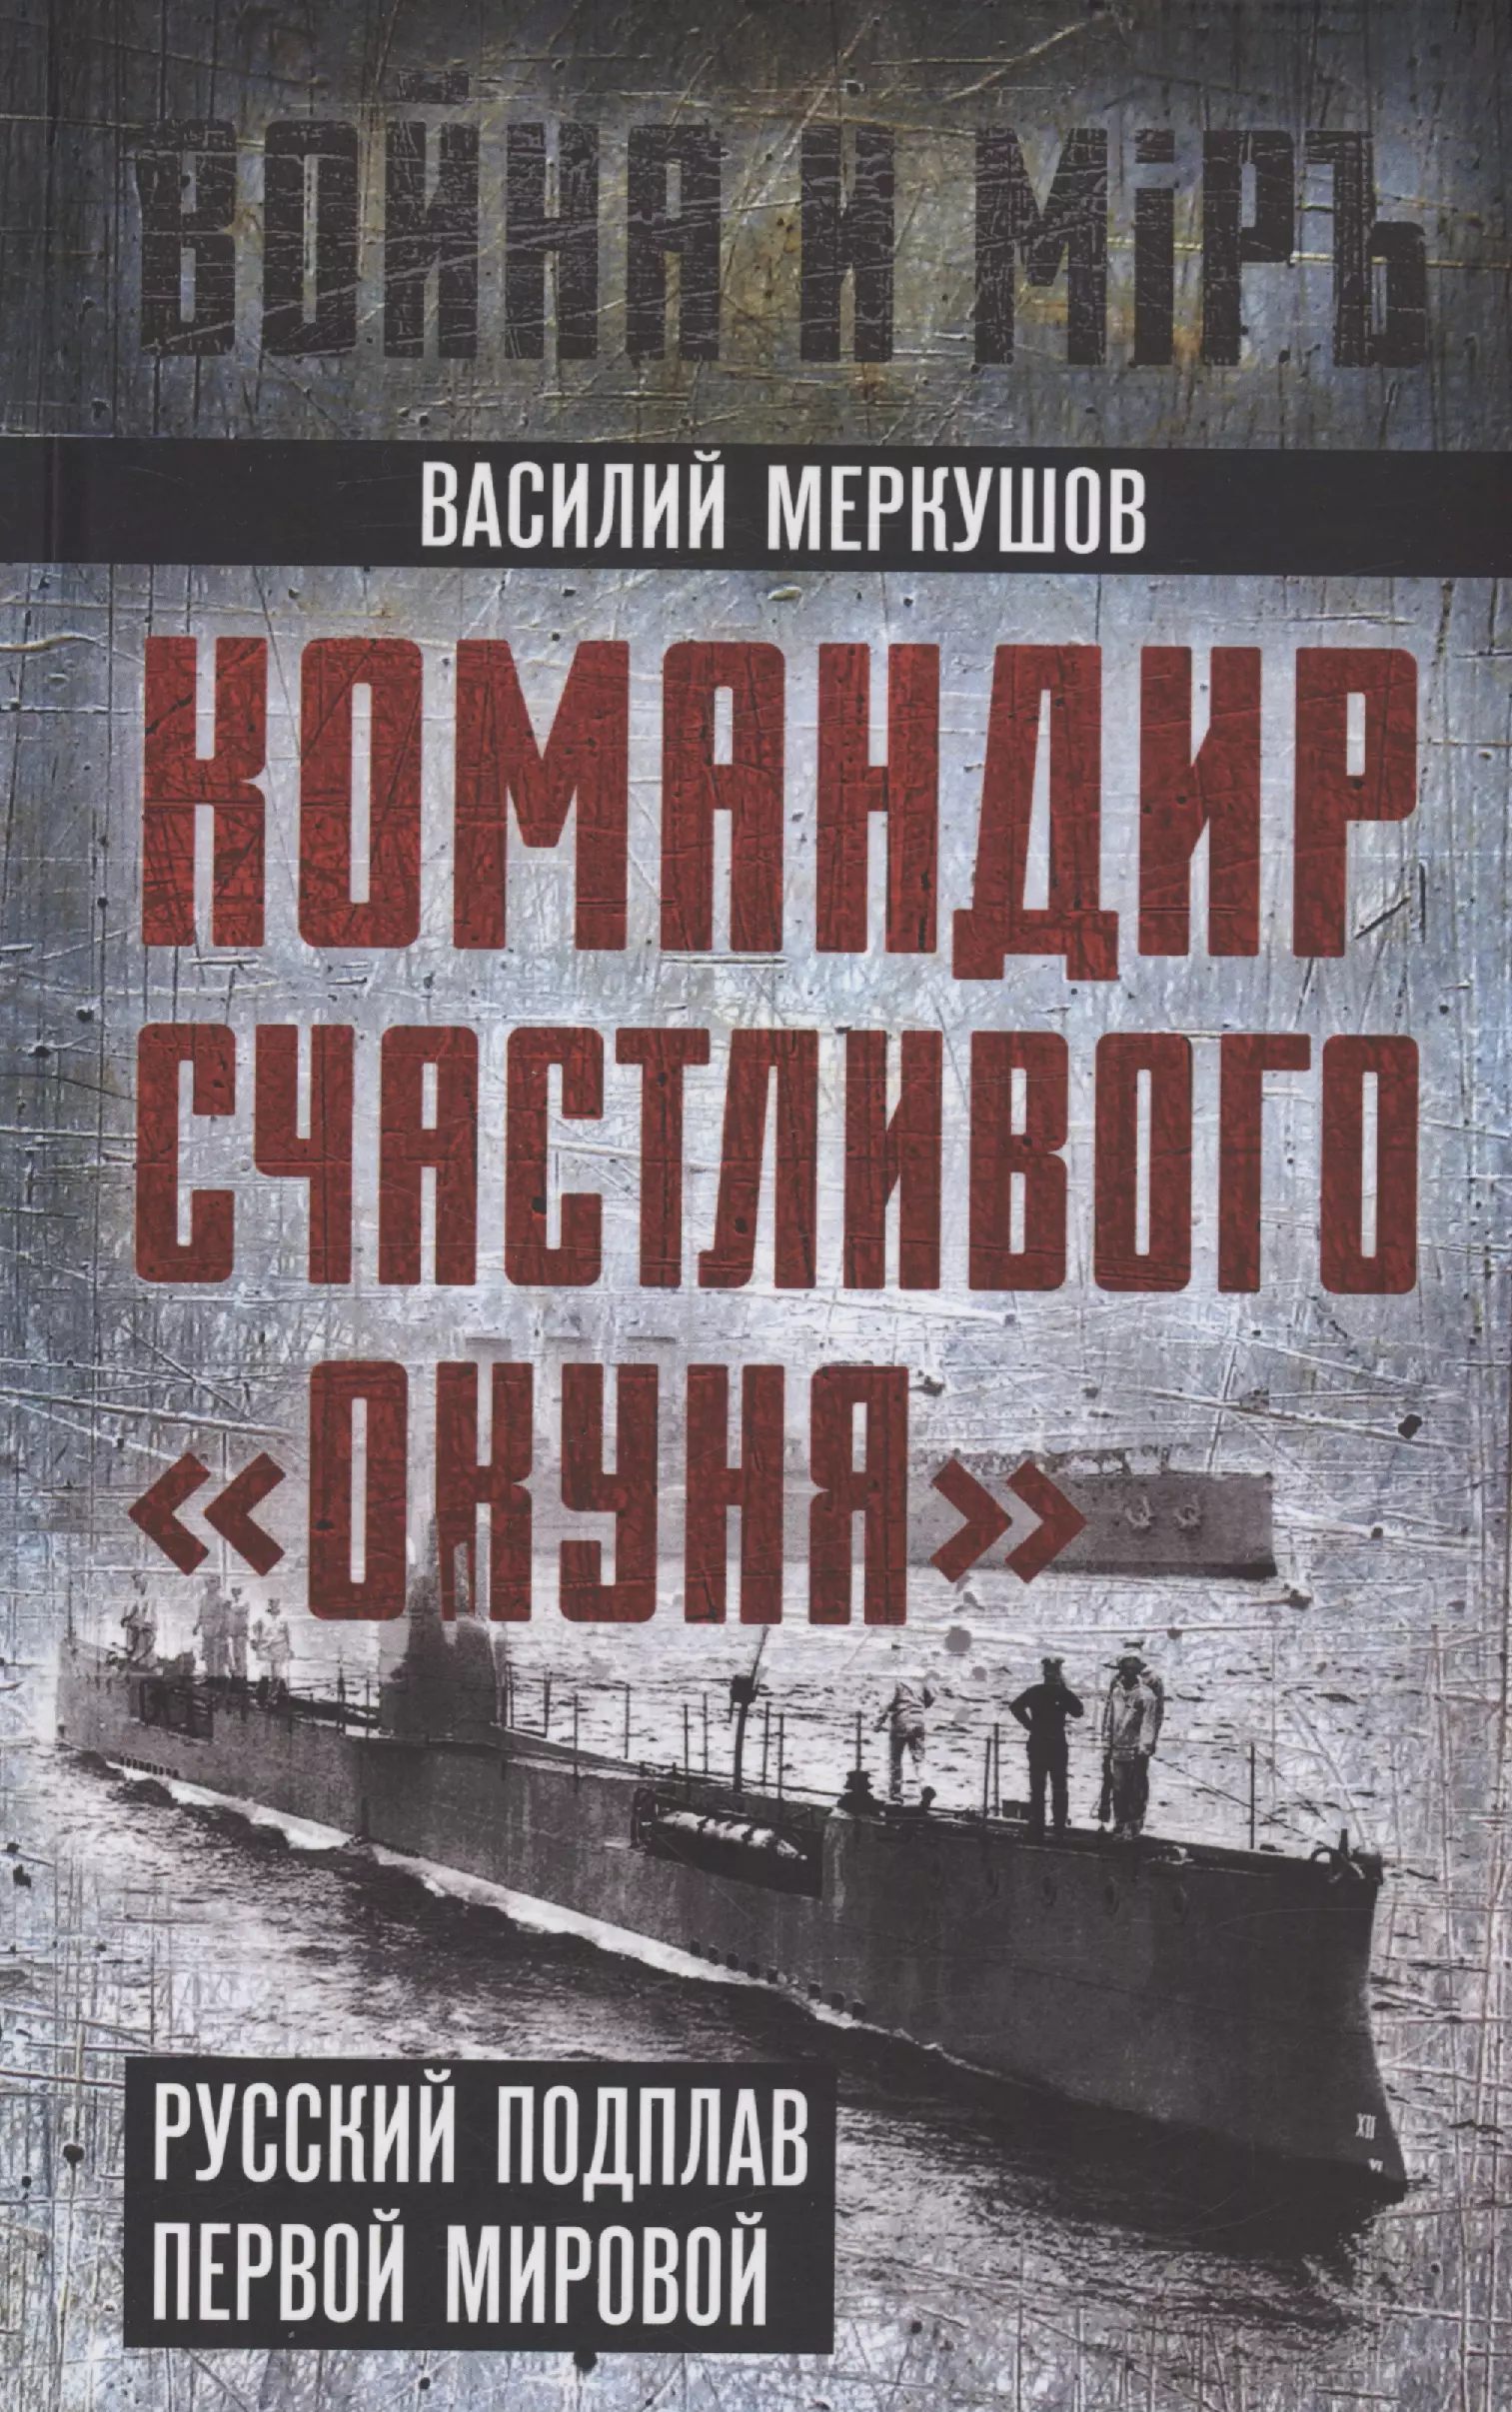 

Командир счастливого "Окуня". Русский подплав Первой мировой